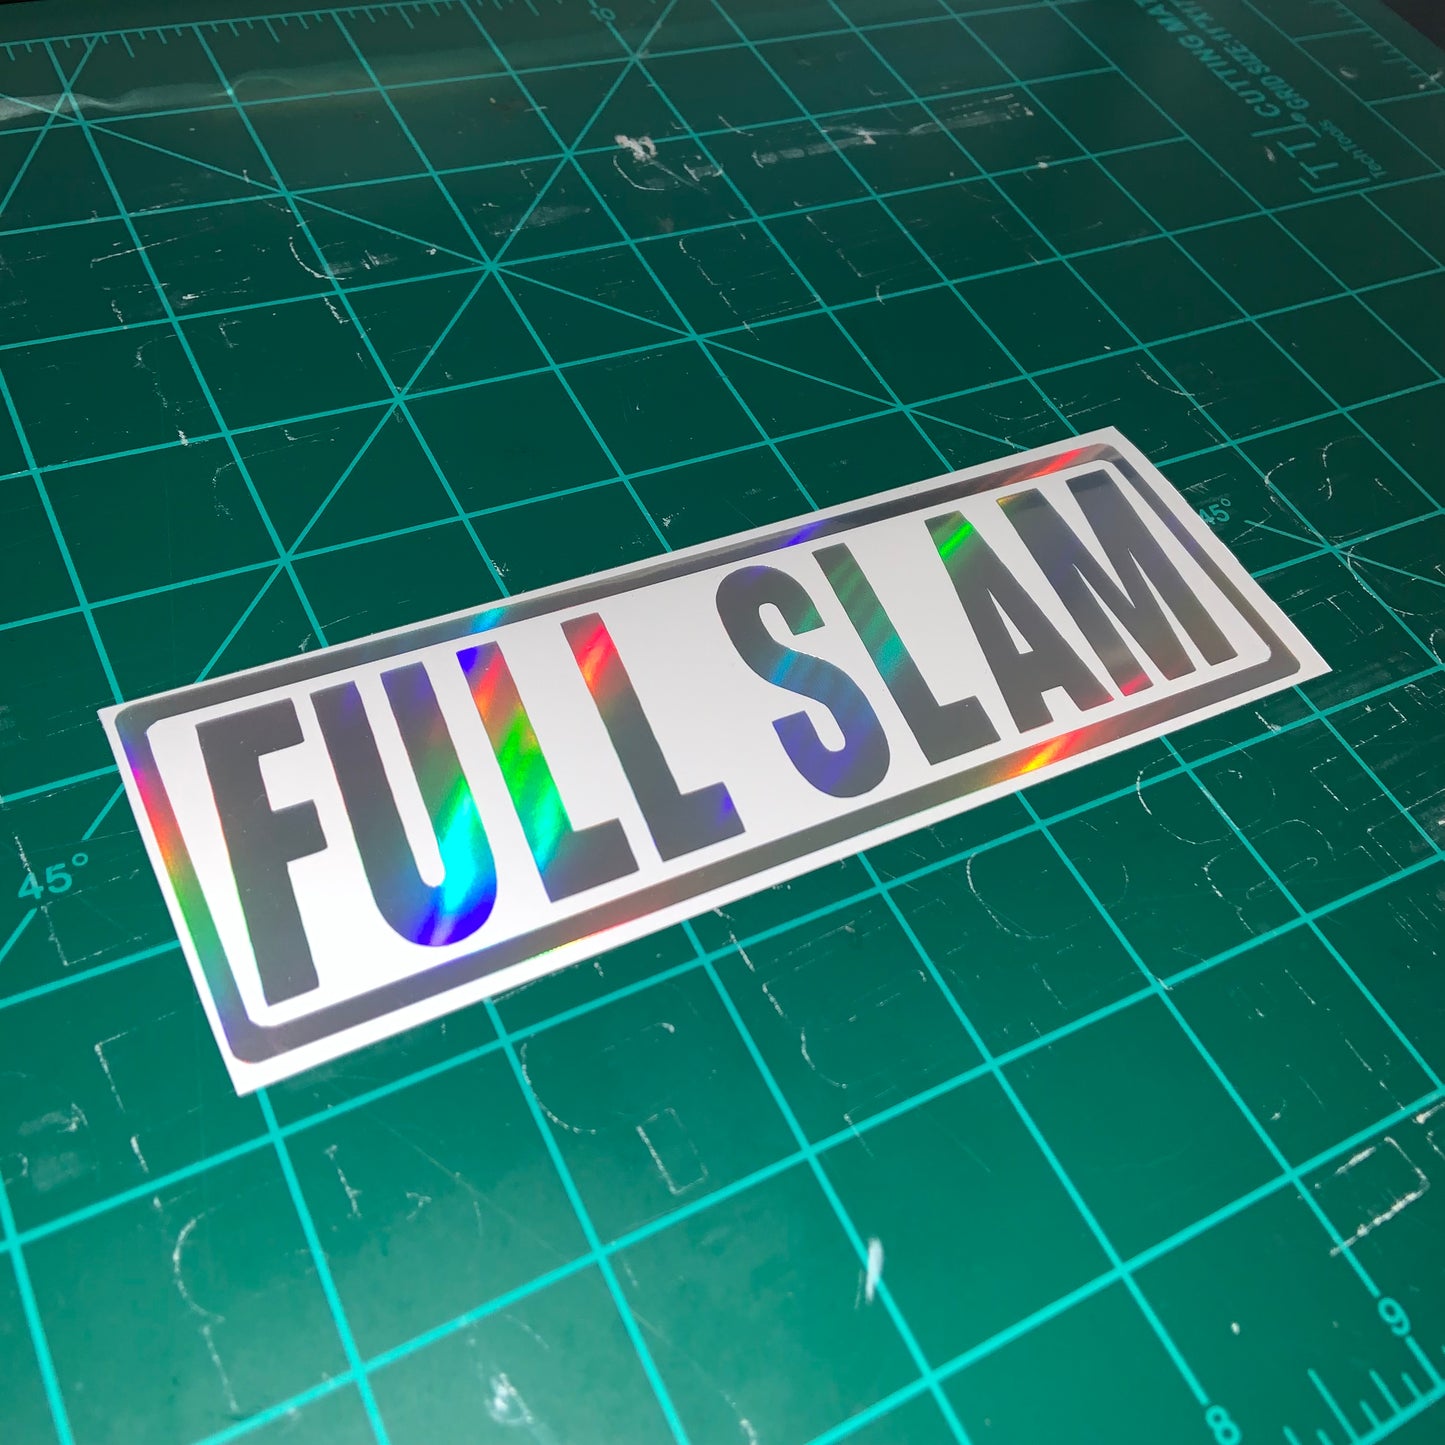 Full Slam v2.0 Vinyl Sticker